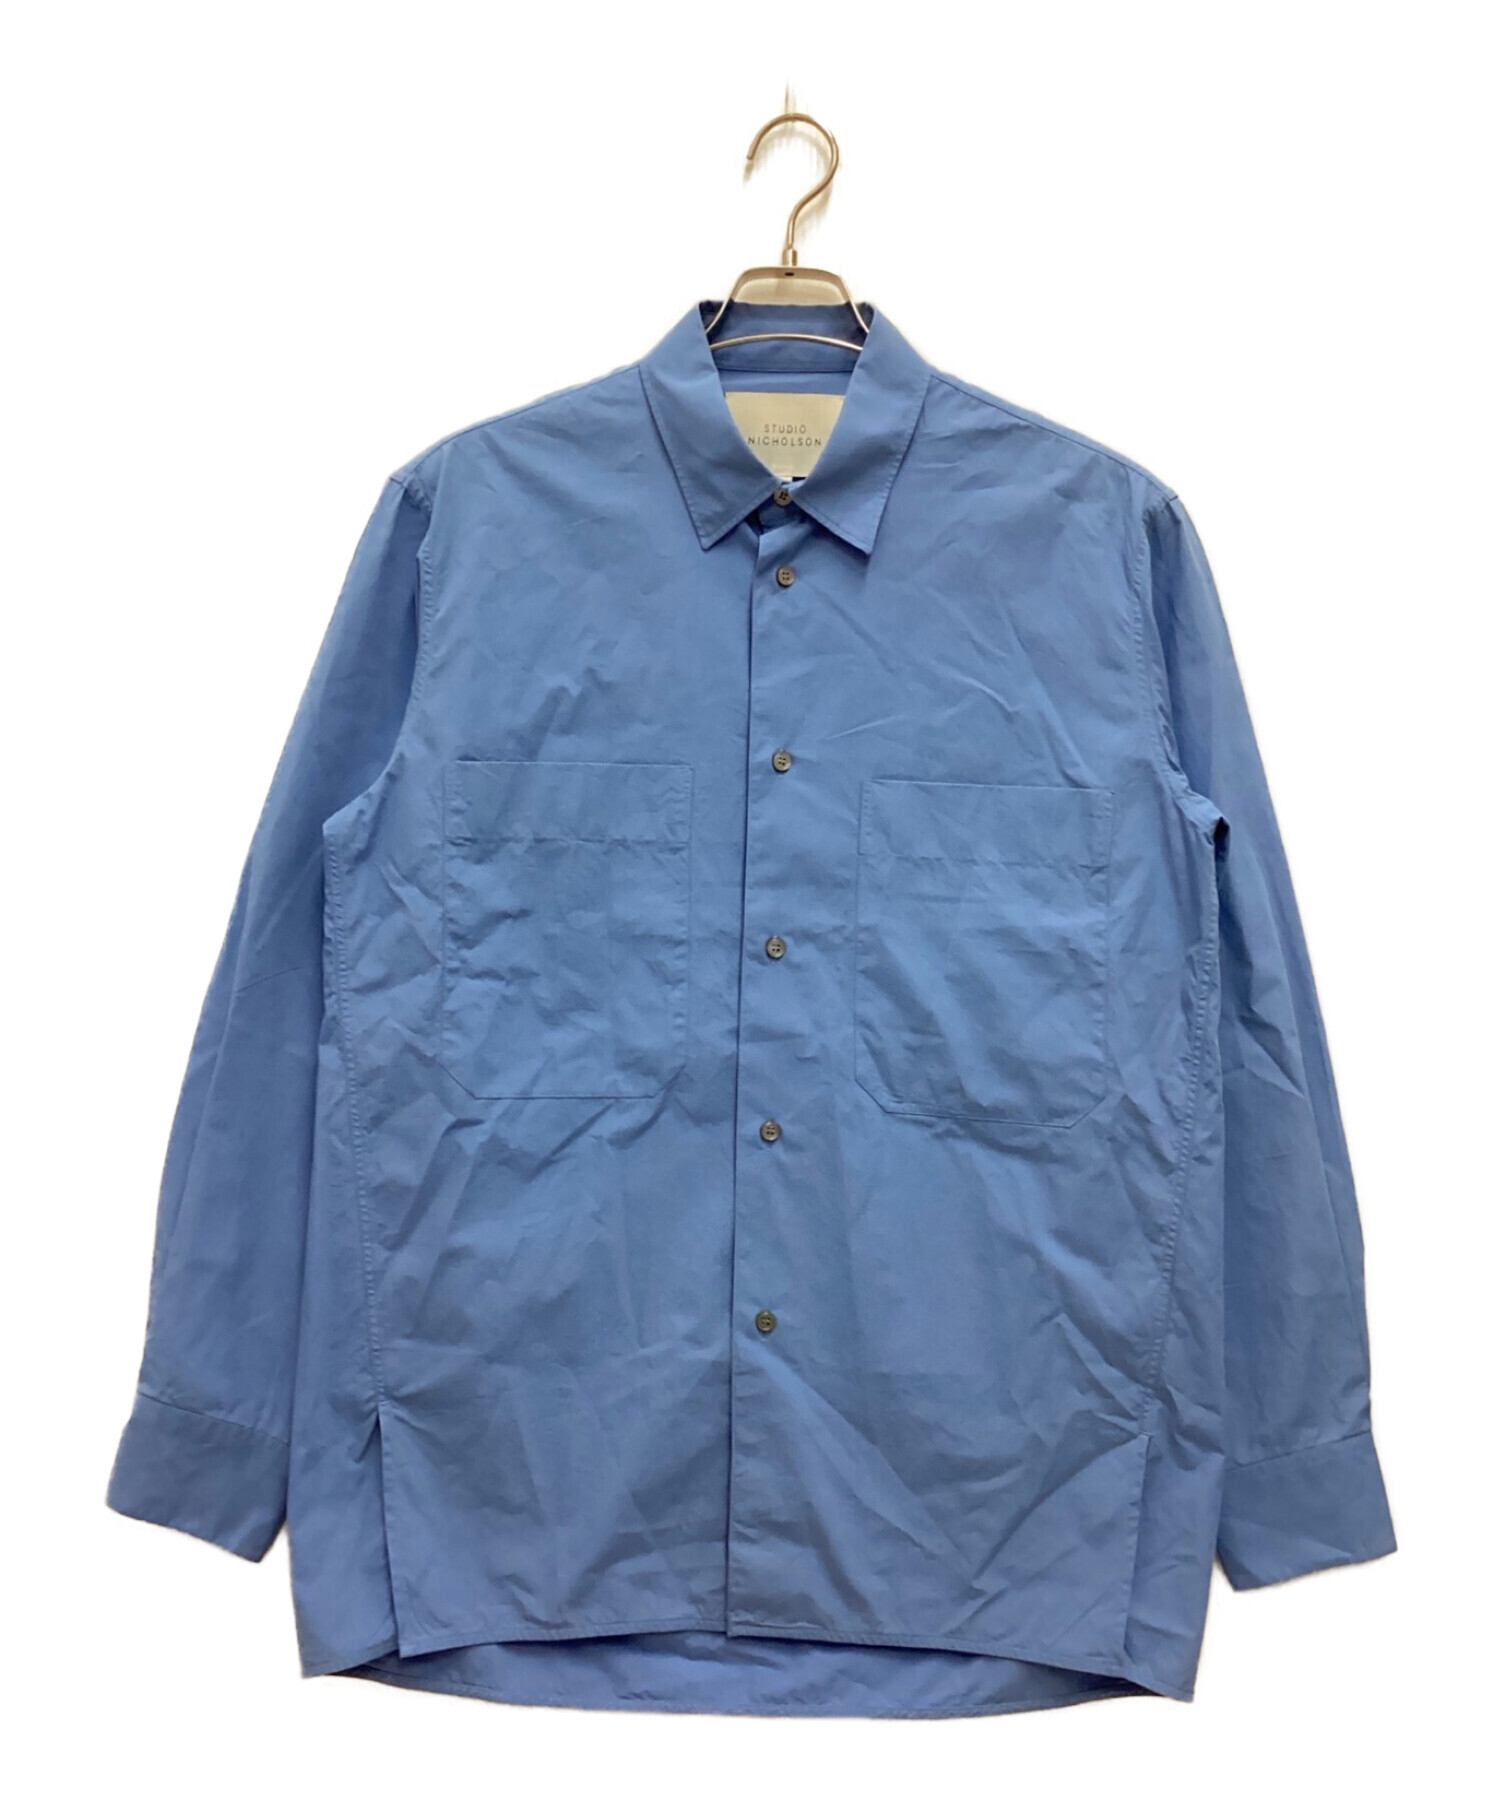 STUDIO NICHOLSON (スタジオニコルソン) コットンシャツ ブルー サイズ:S